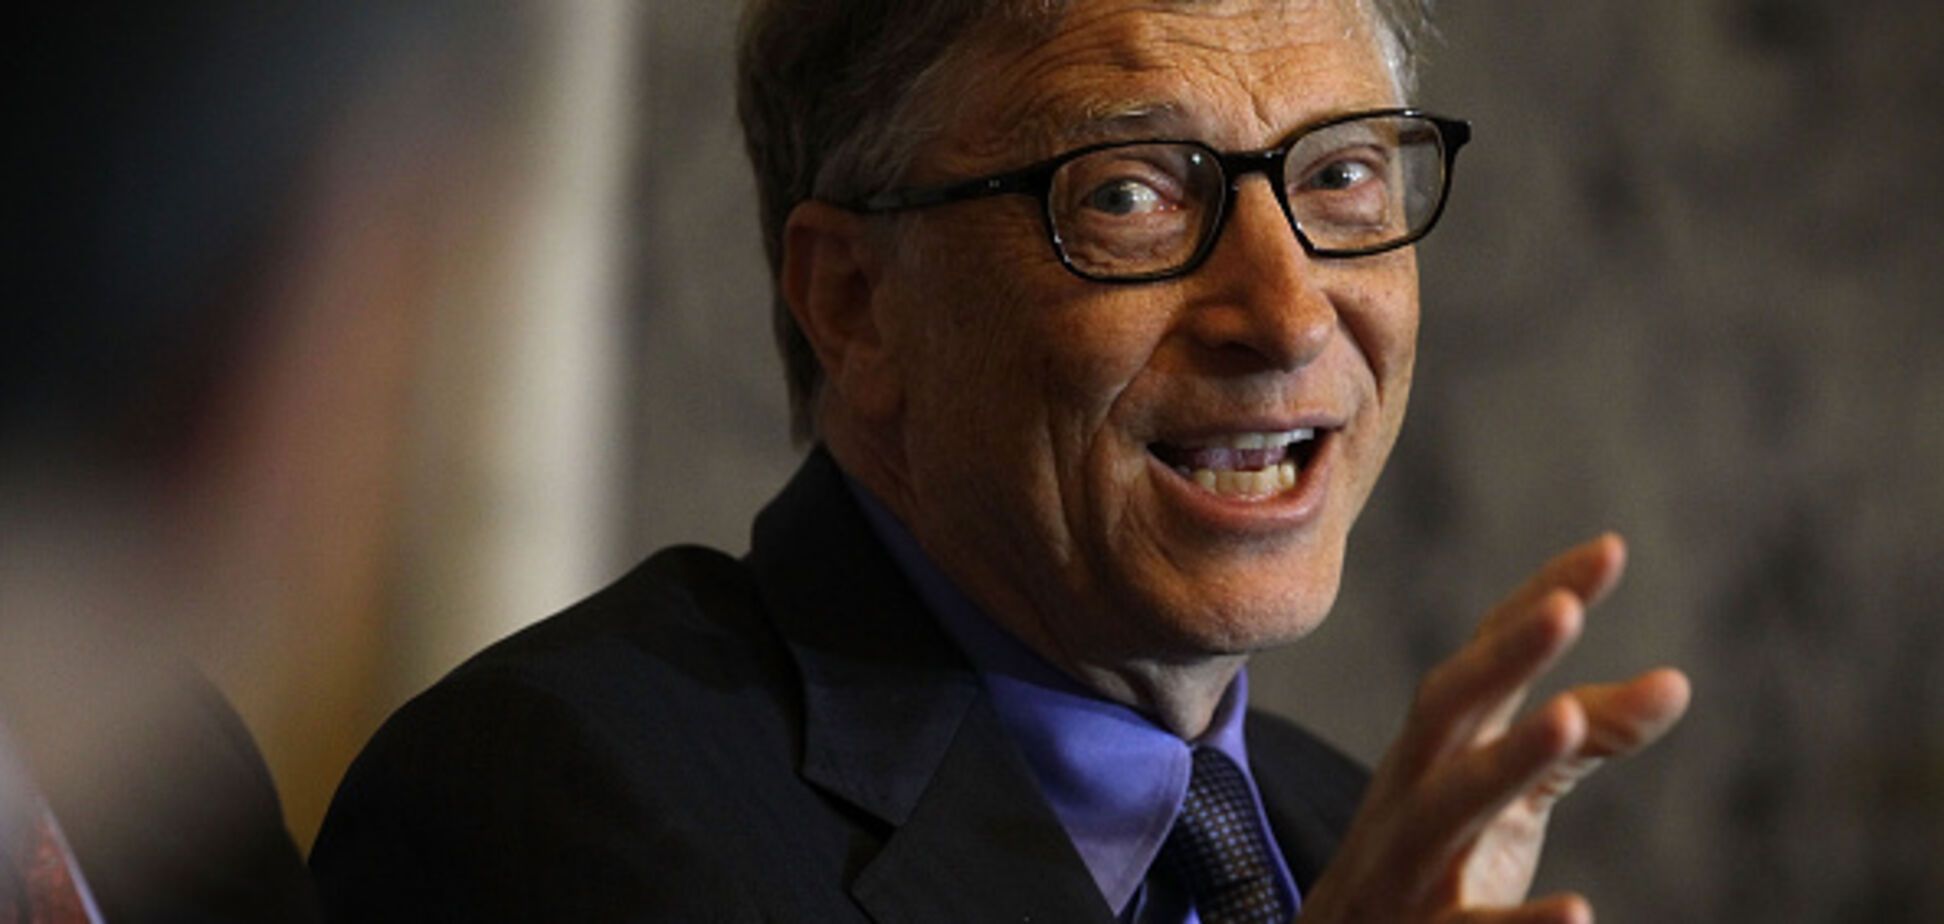 Гейтс потерял статус самого богатого человека в мире - Forbes